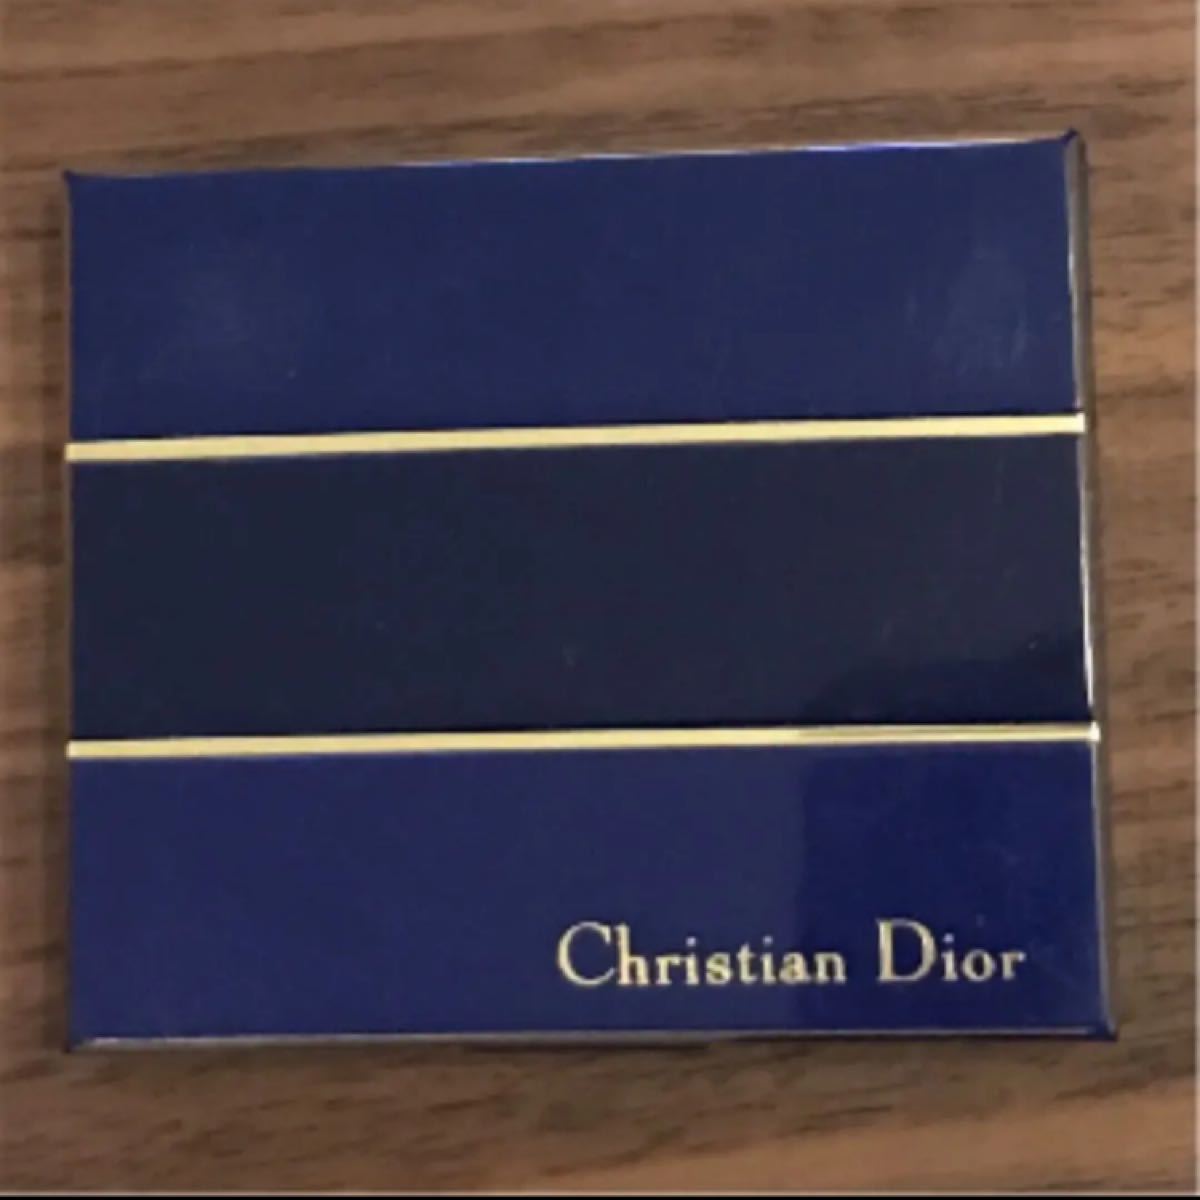 ディオール サンク クルール Dior Christian Dior クリスチャンディオール